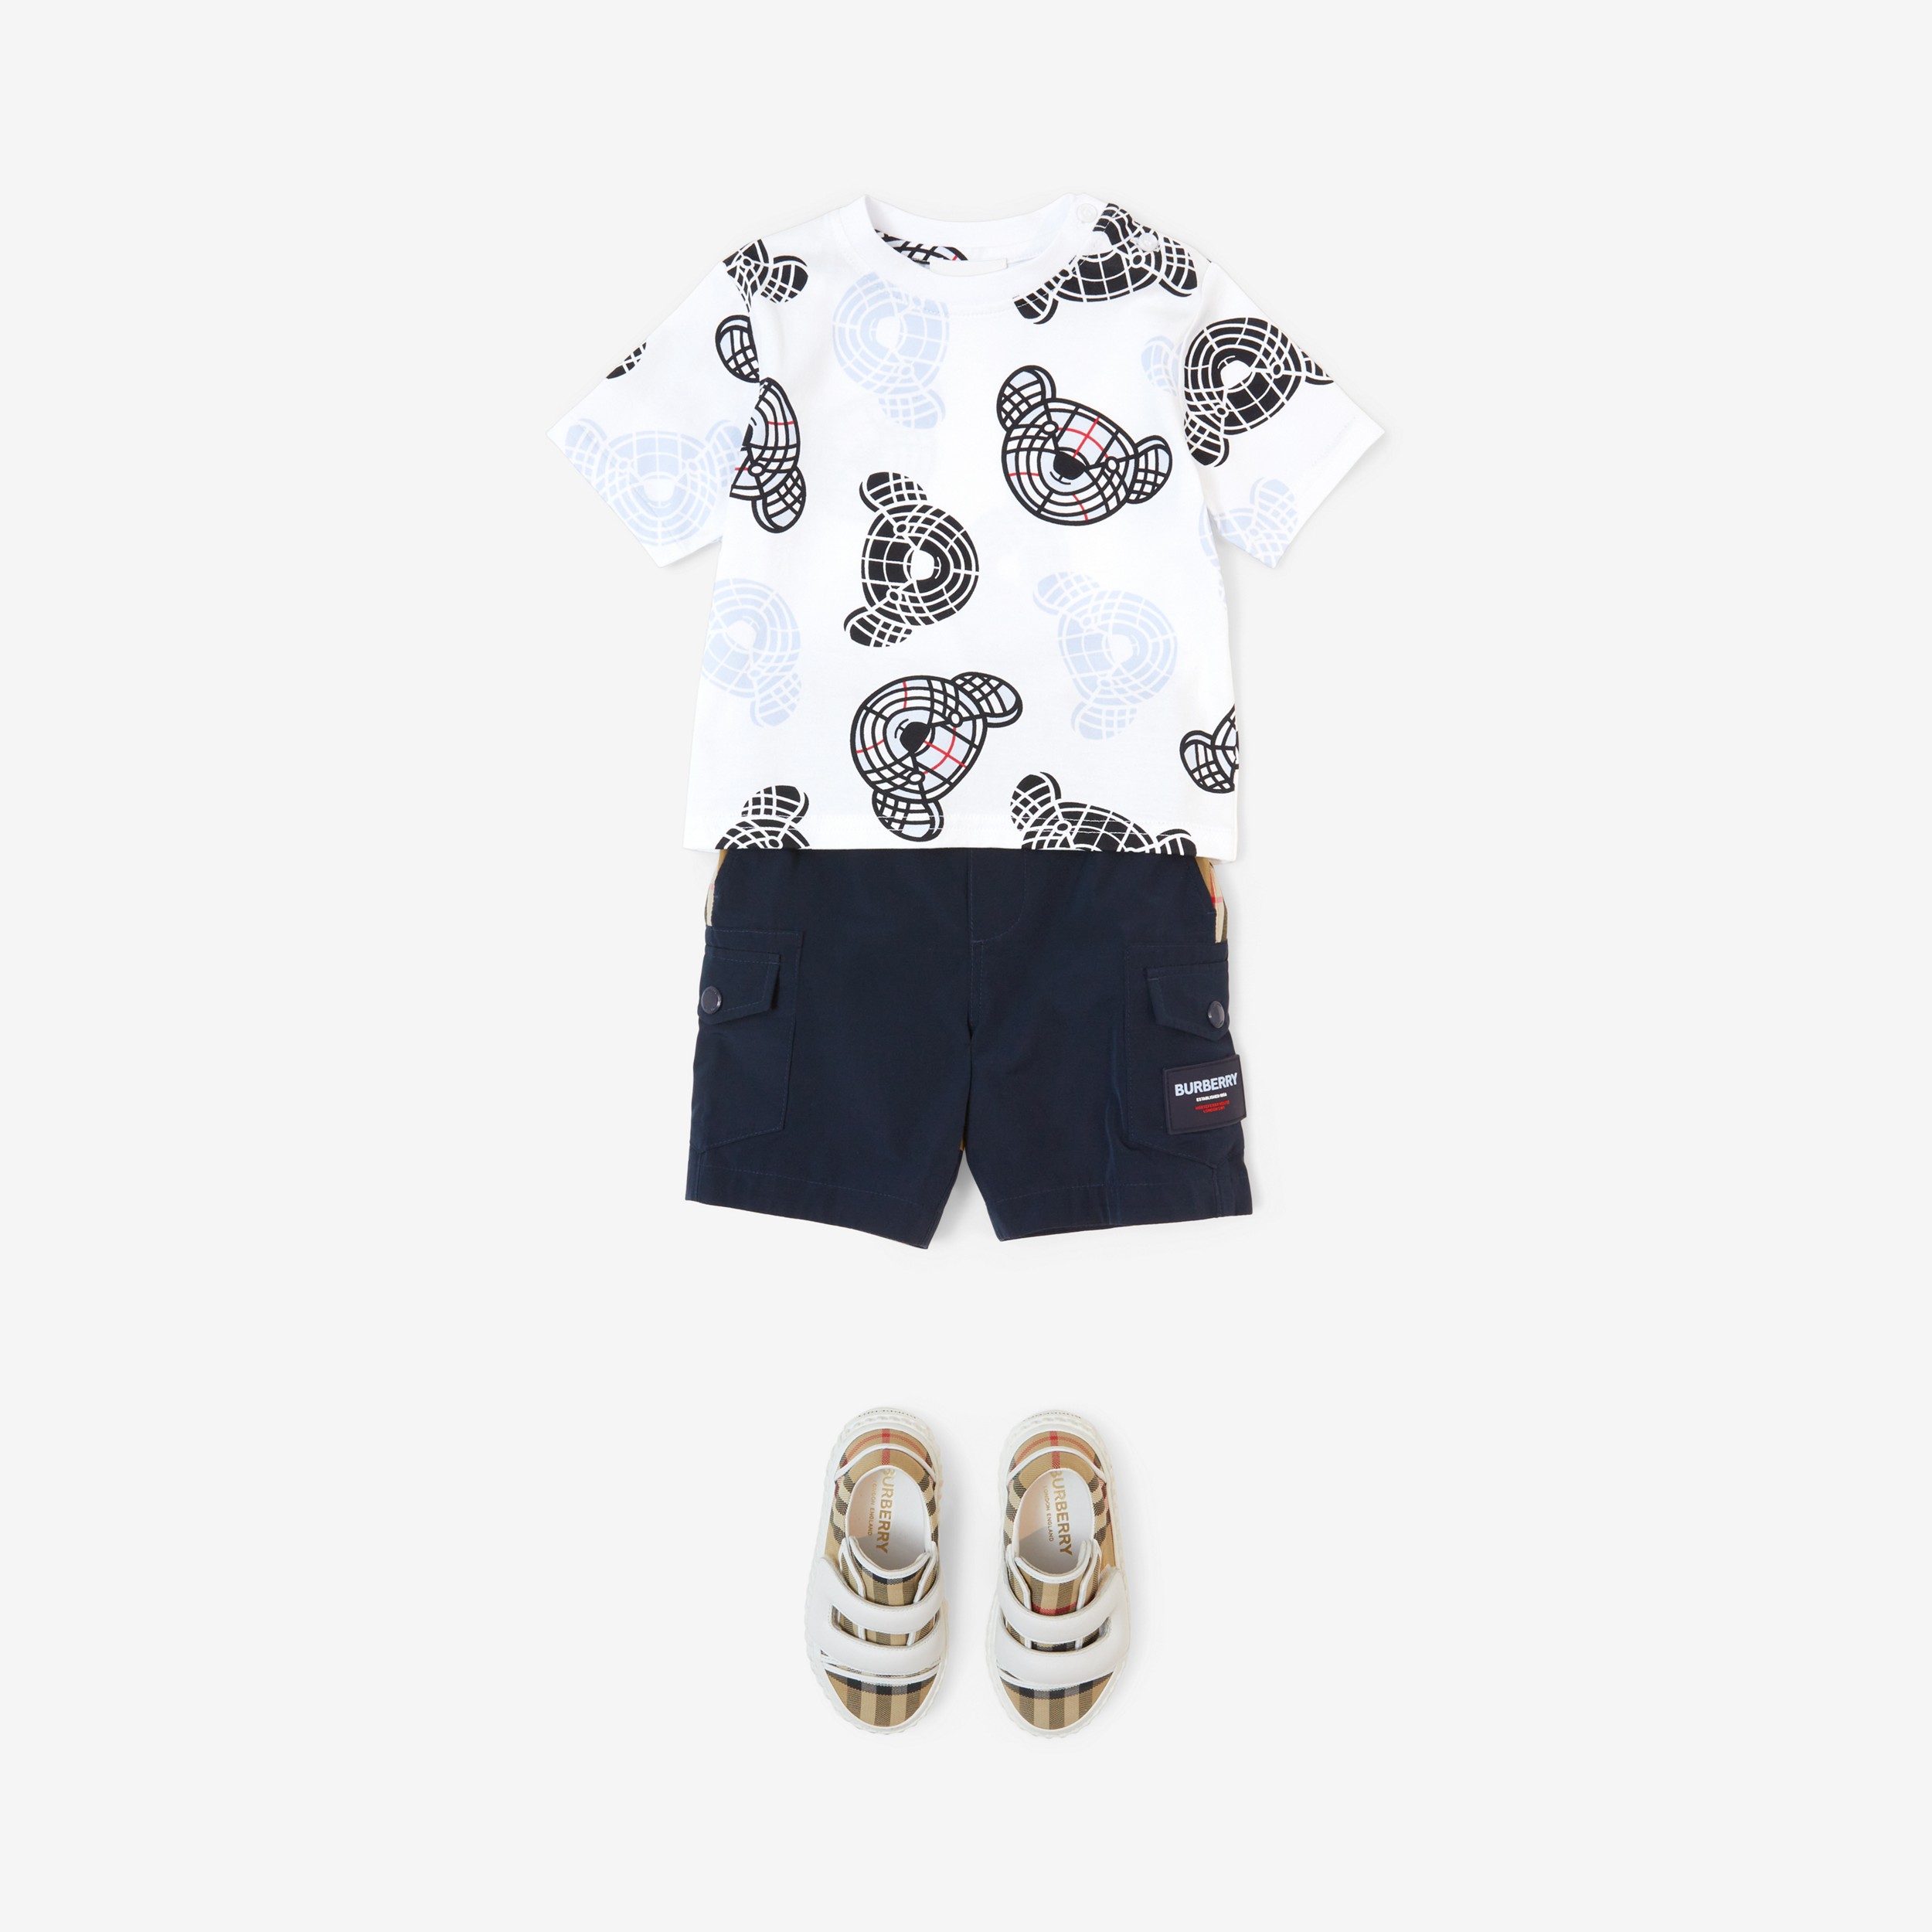 토마스 베어 프린트 코튼 티셔츠 (화이트) - 아동 | Burberry® - 4